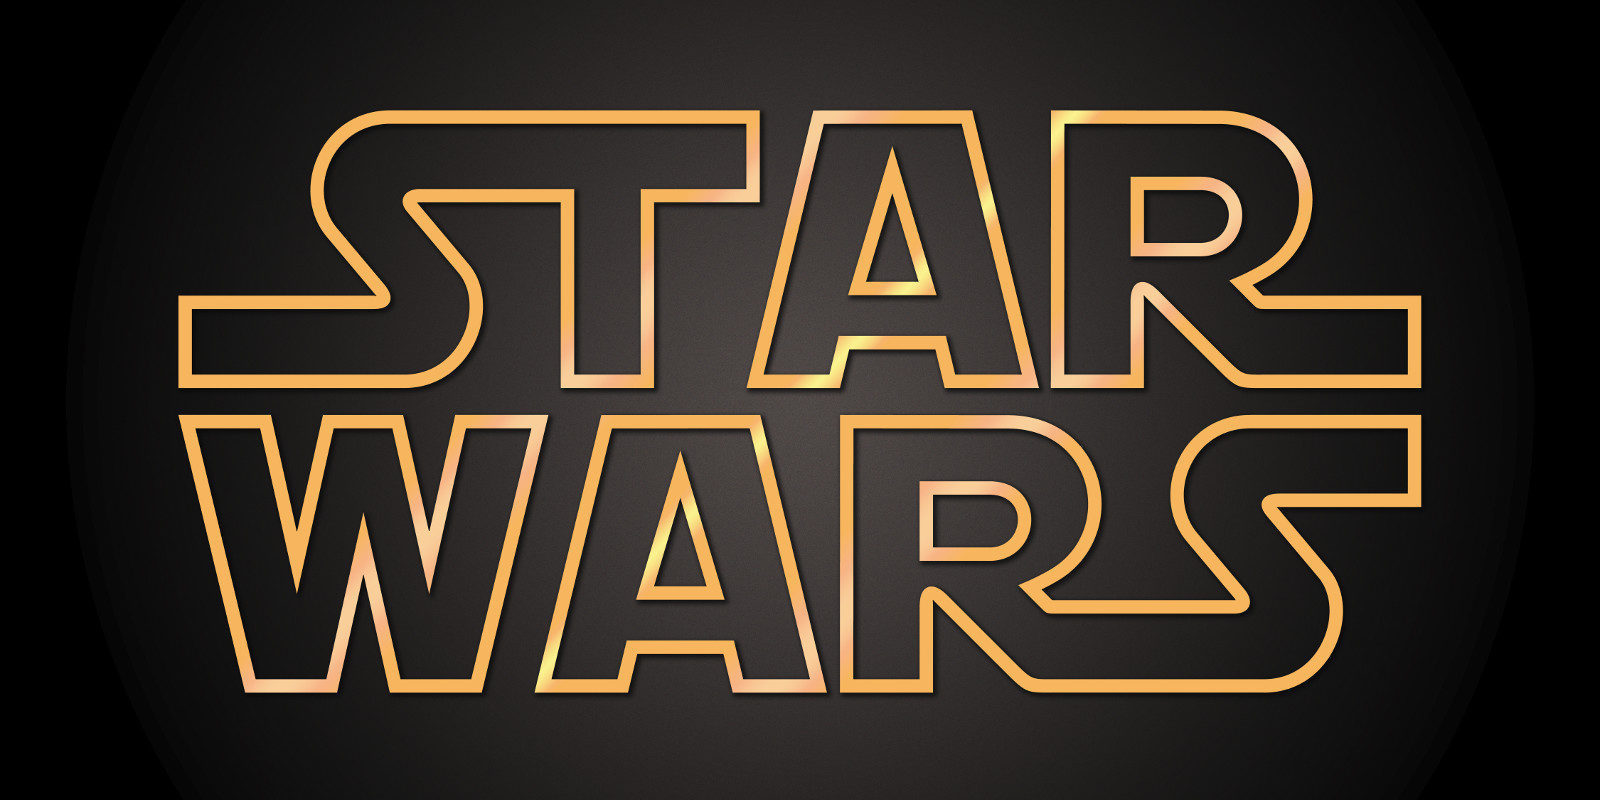 Fecha de estreno de Star Wars: Episodio IX e Indiana Jones